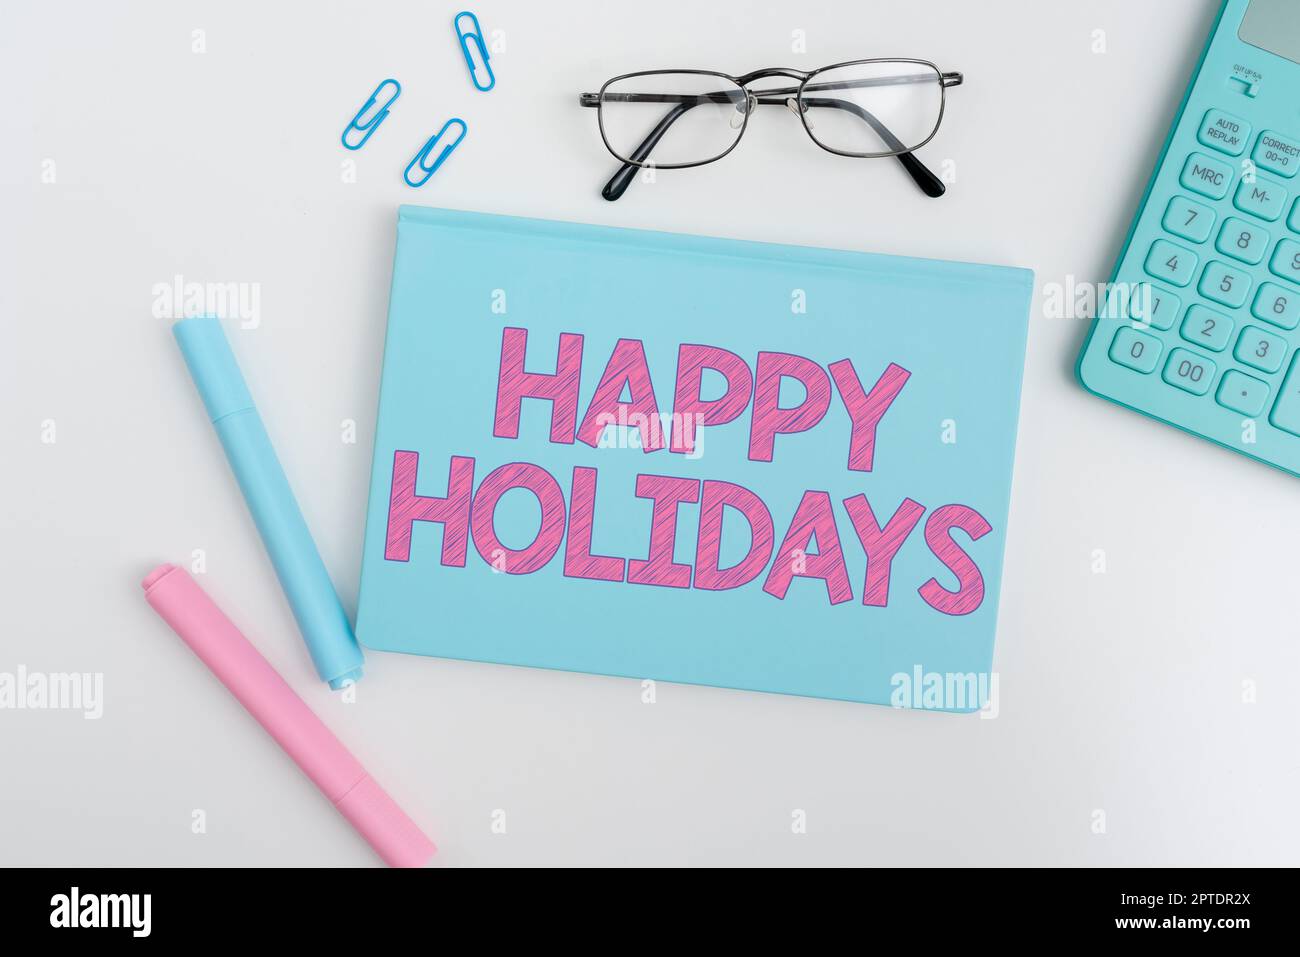 Affiche présentant les fêtes de fin d'année, le concept d'entreprise salutation utilisé pour reconnaître la célébration de nombreuses vacances Banque D'Images